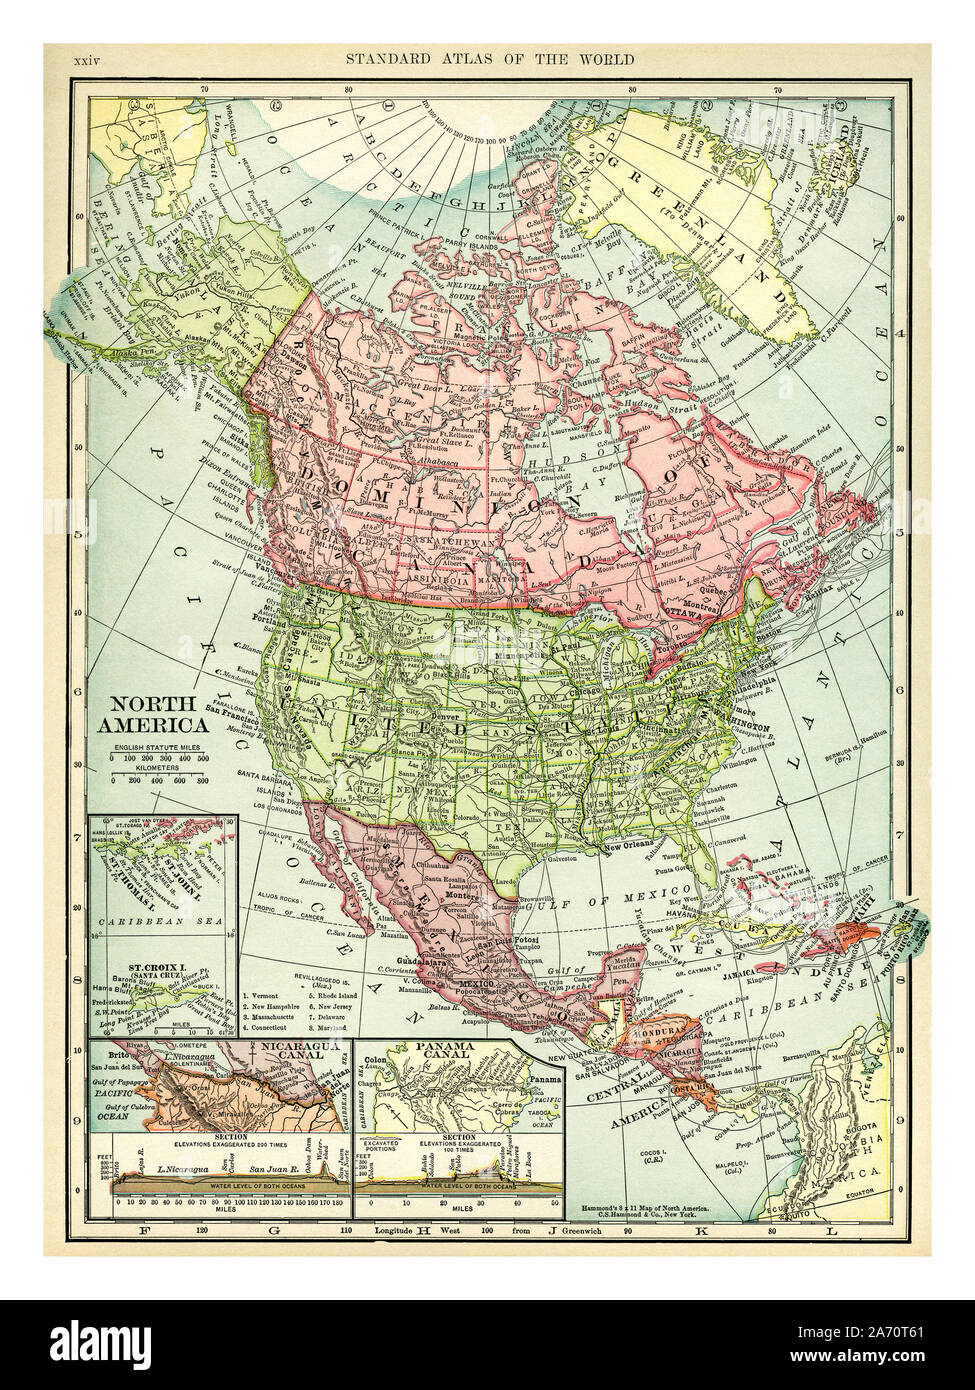 Jahrgang 1906 Karte von Nordamerika. Länder sind auf dieser Karte sind: Kanada, Grönland, USA, Mexiko, Guatemala, Honduras, Nicaragua, Costa Rica, Kuba und Haiti. C. S. Hammond Karte gedruckt und veröffentlicht 1906. Stockfoto